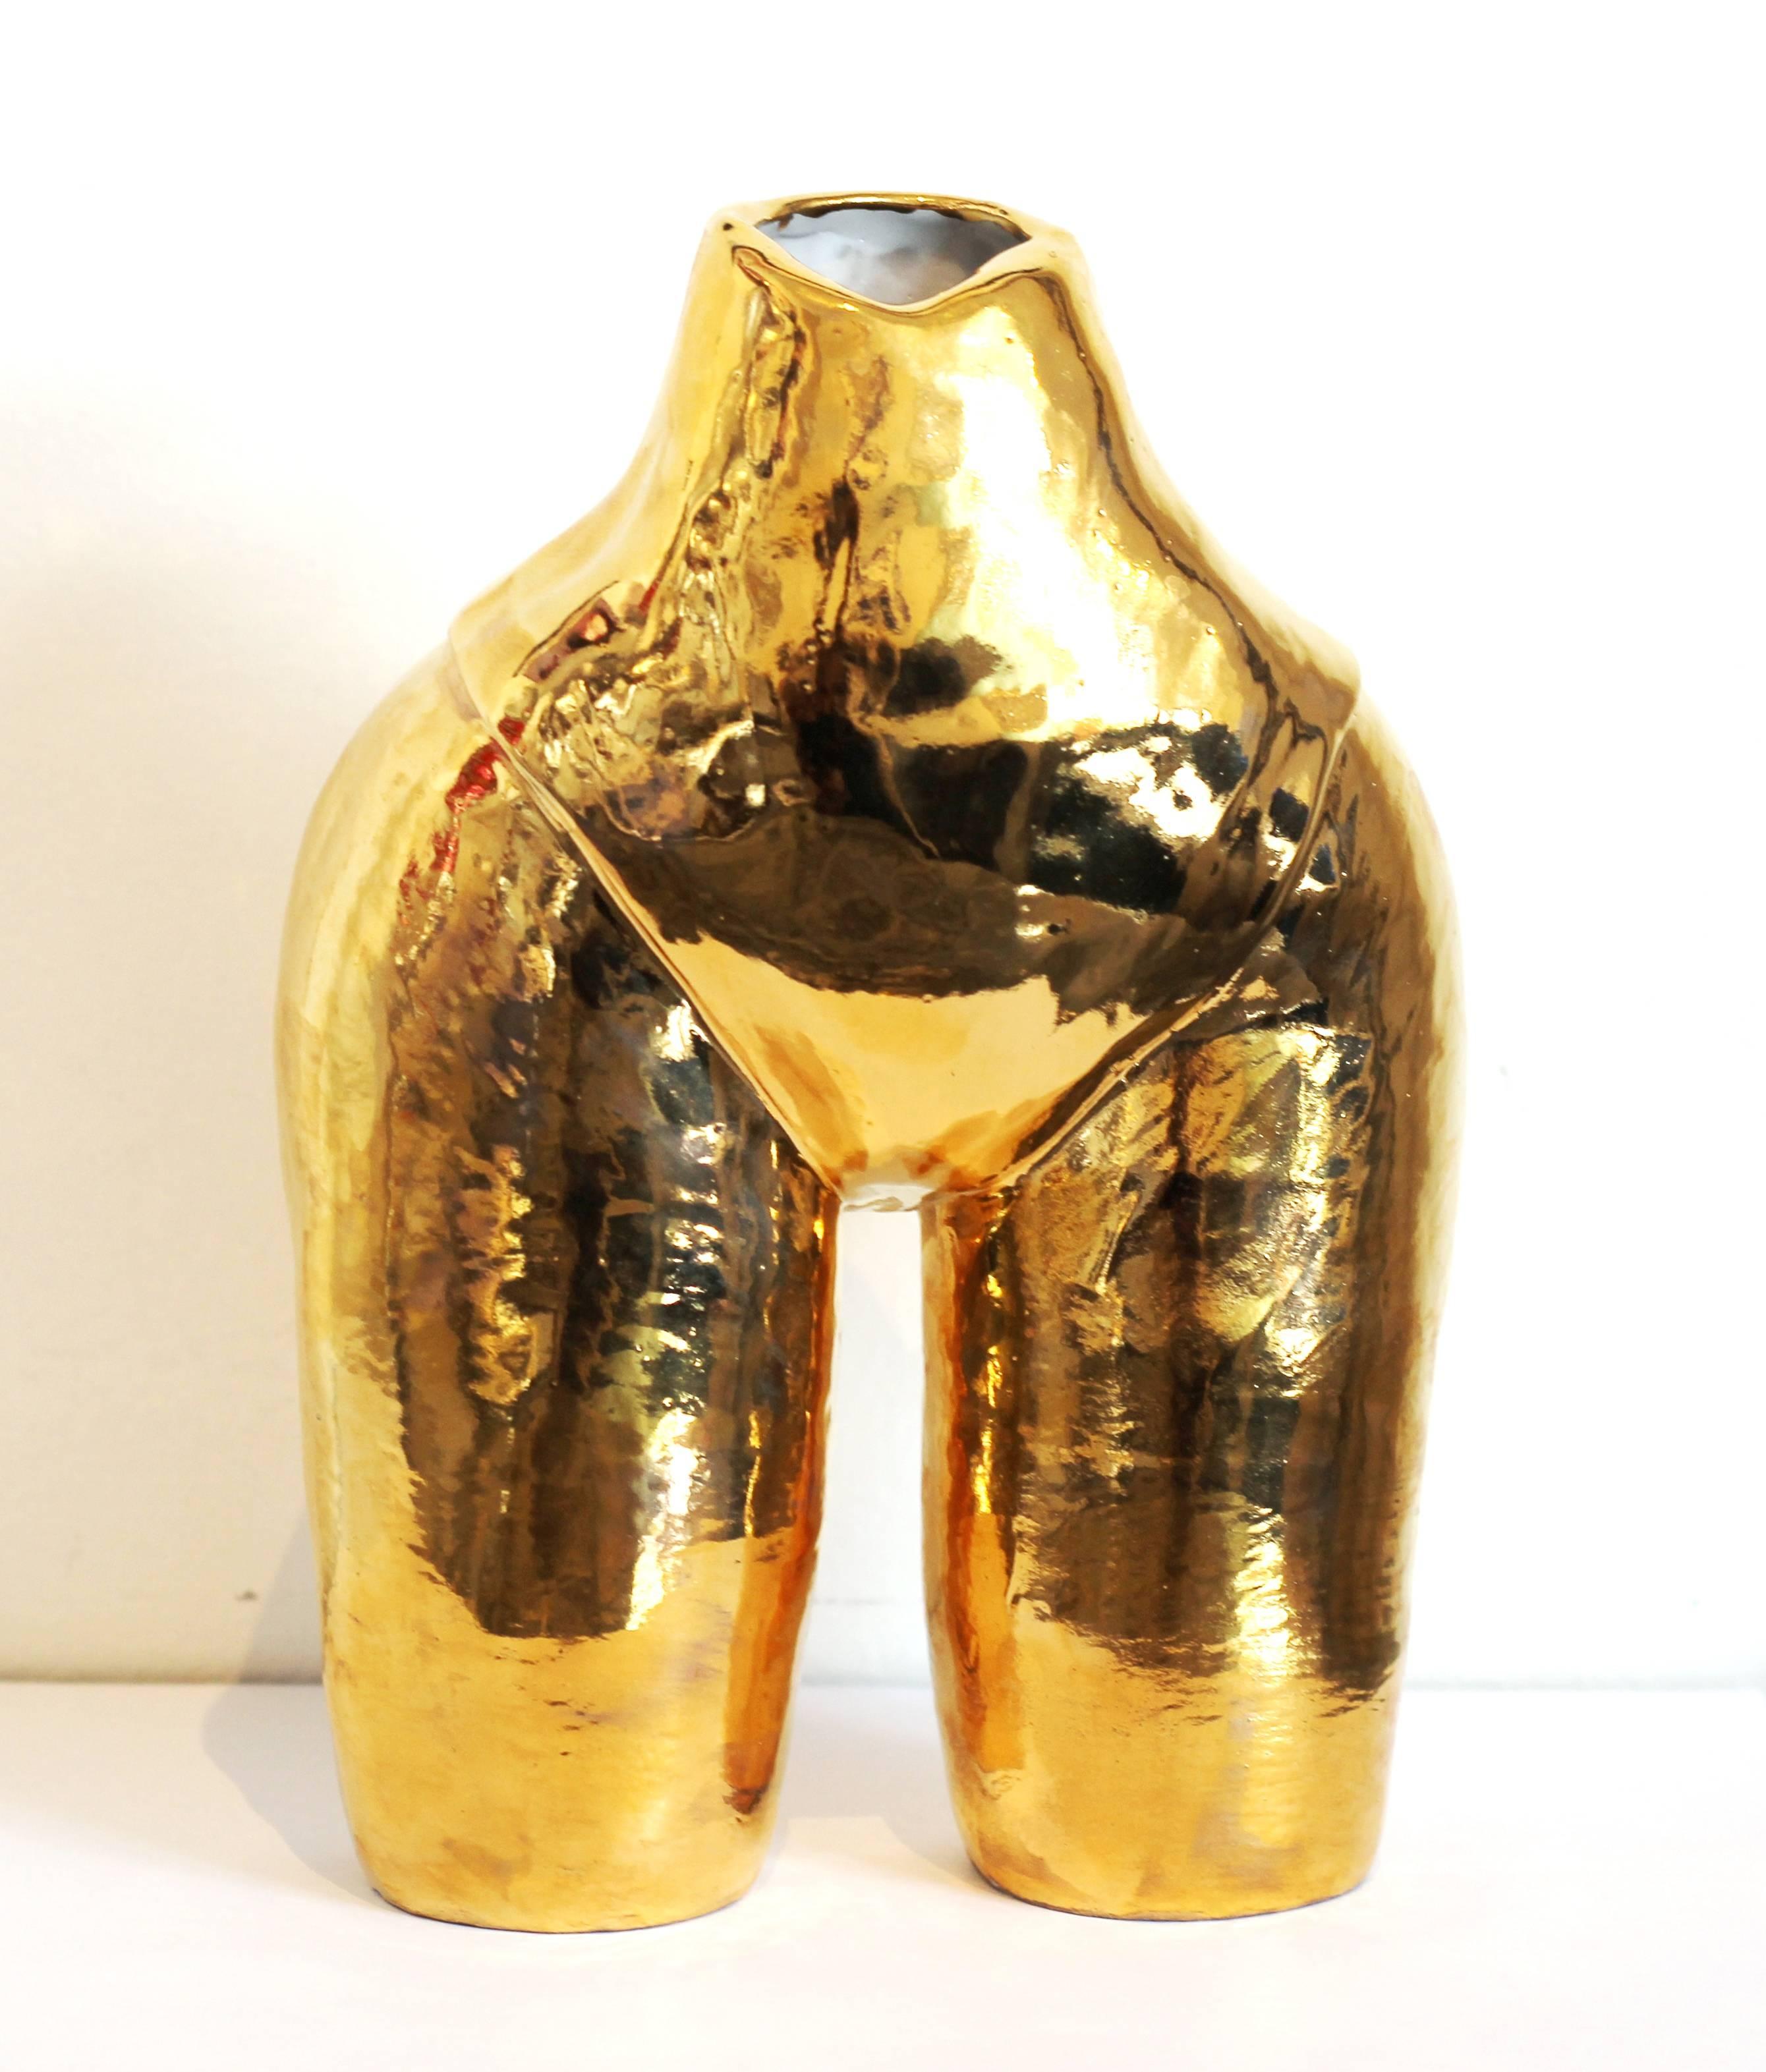 Meegan Barnes Figurative Sculpture - Golden Booty